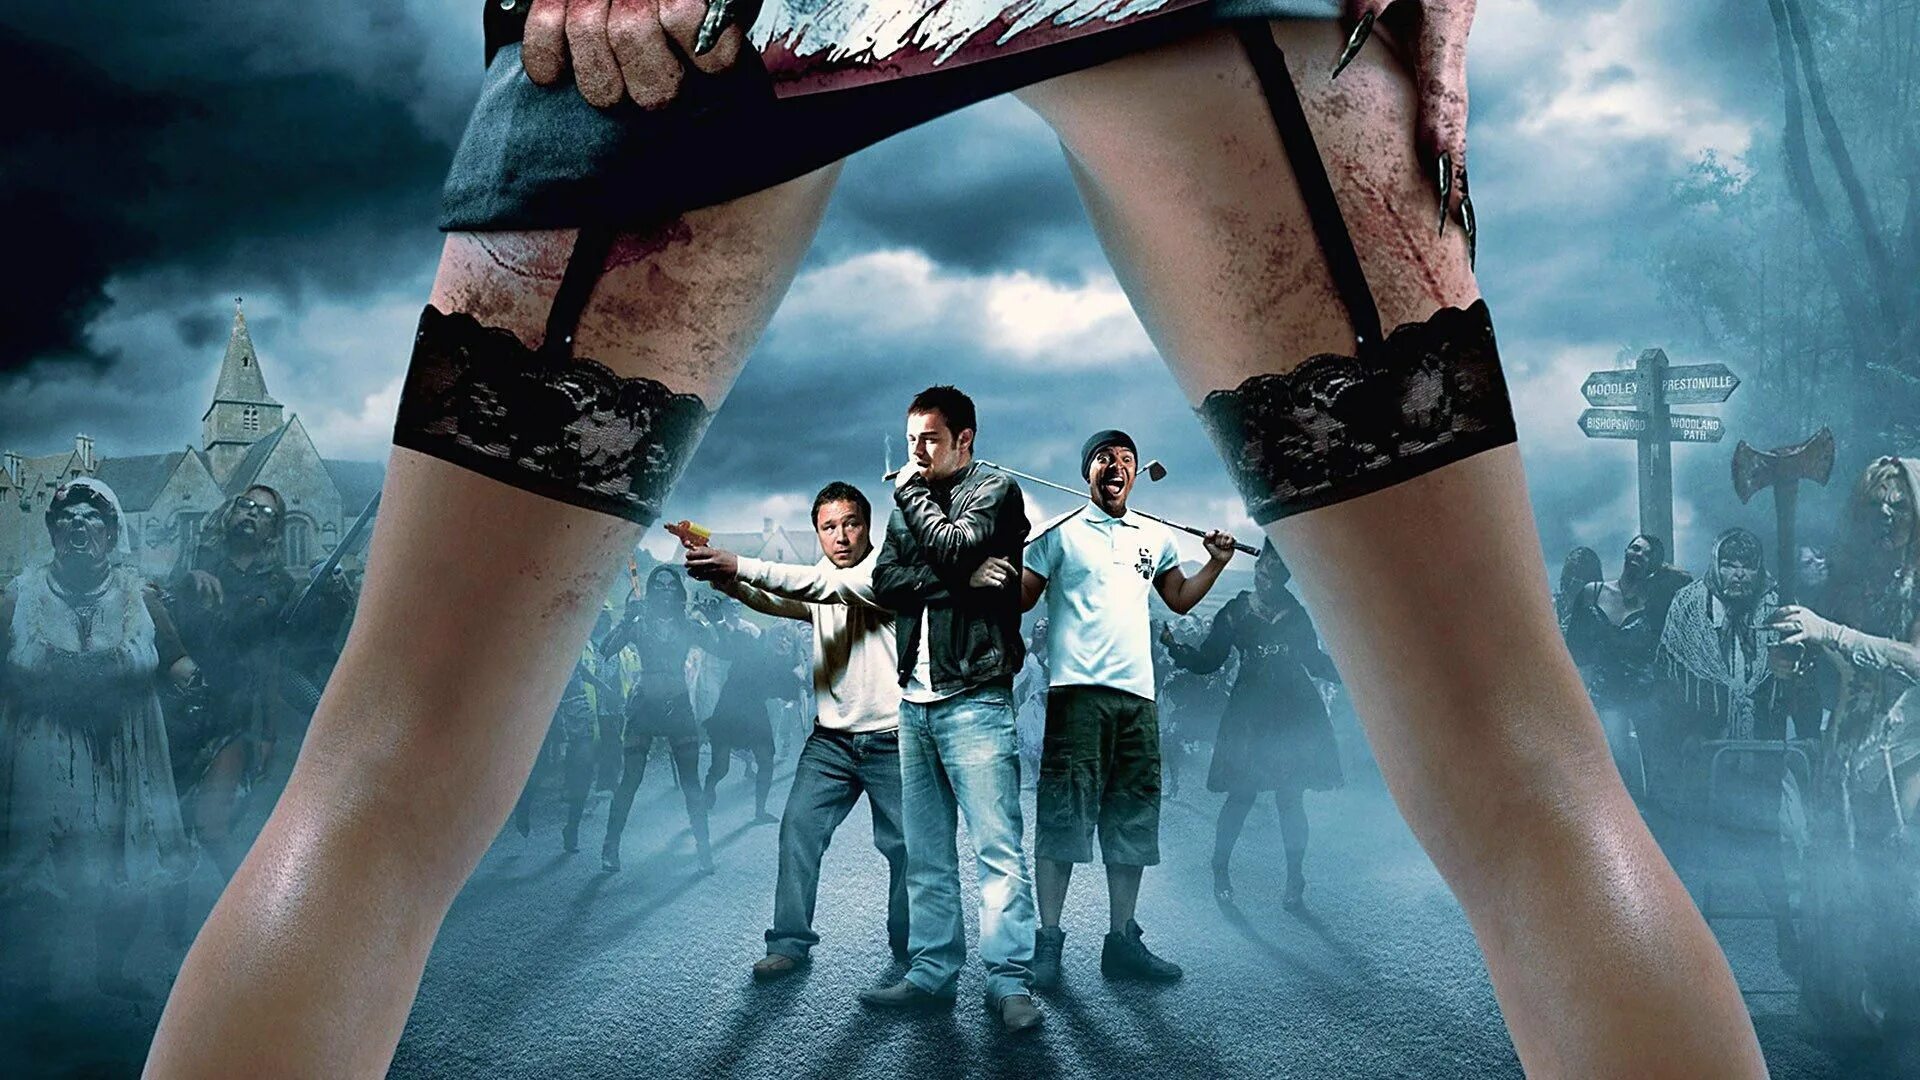 Попали! (Конура) -2009 Постер. Приключение комедии фантастики ужасы